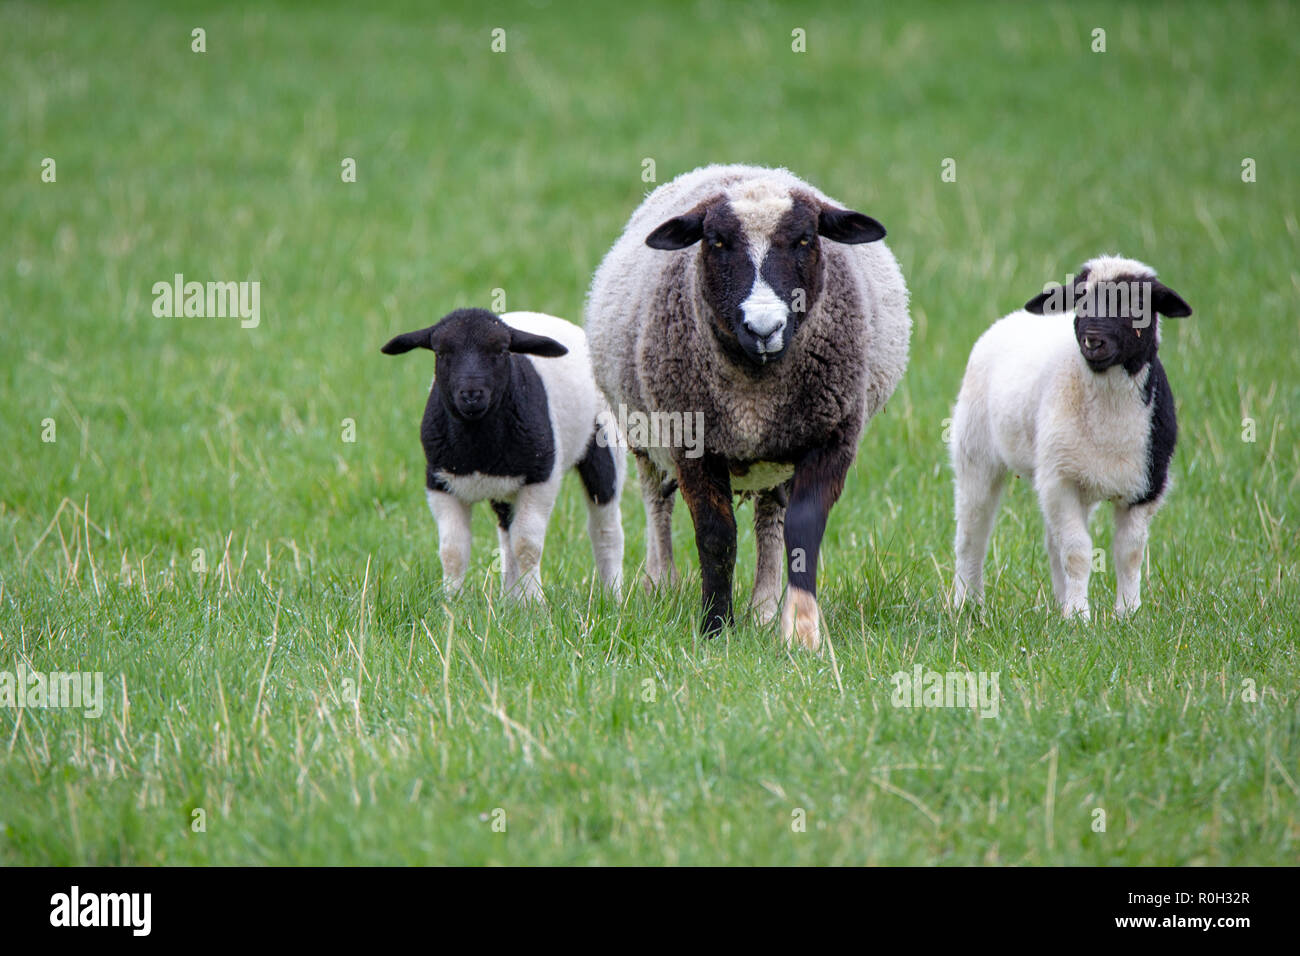 Un noir et blanc avec ses brebis agneaux noir et blanc sur une ferme au printemps Banque D'Images